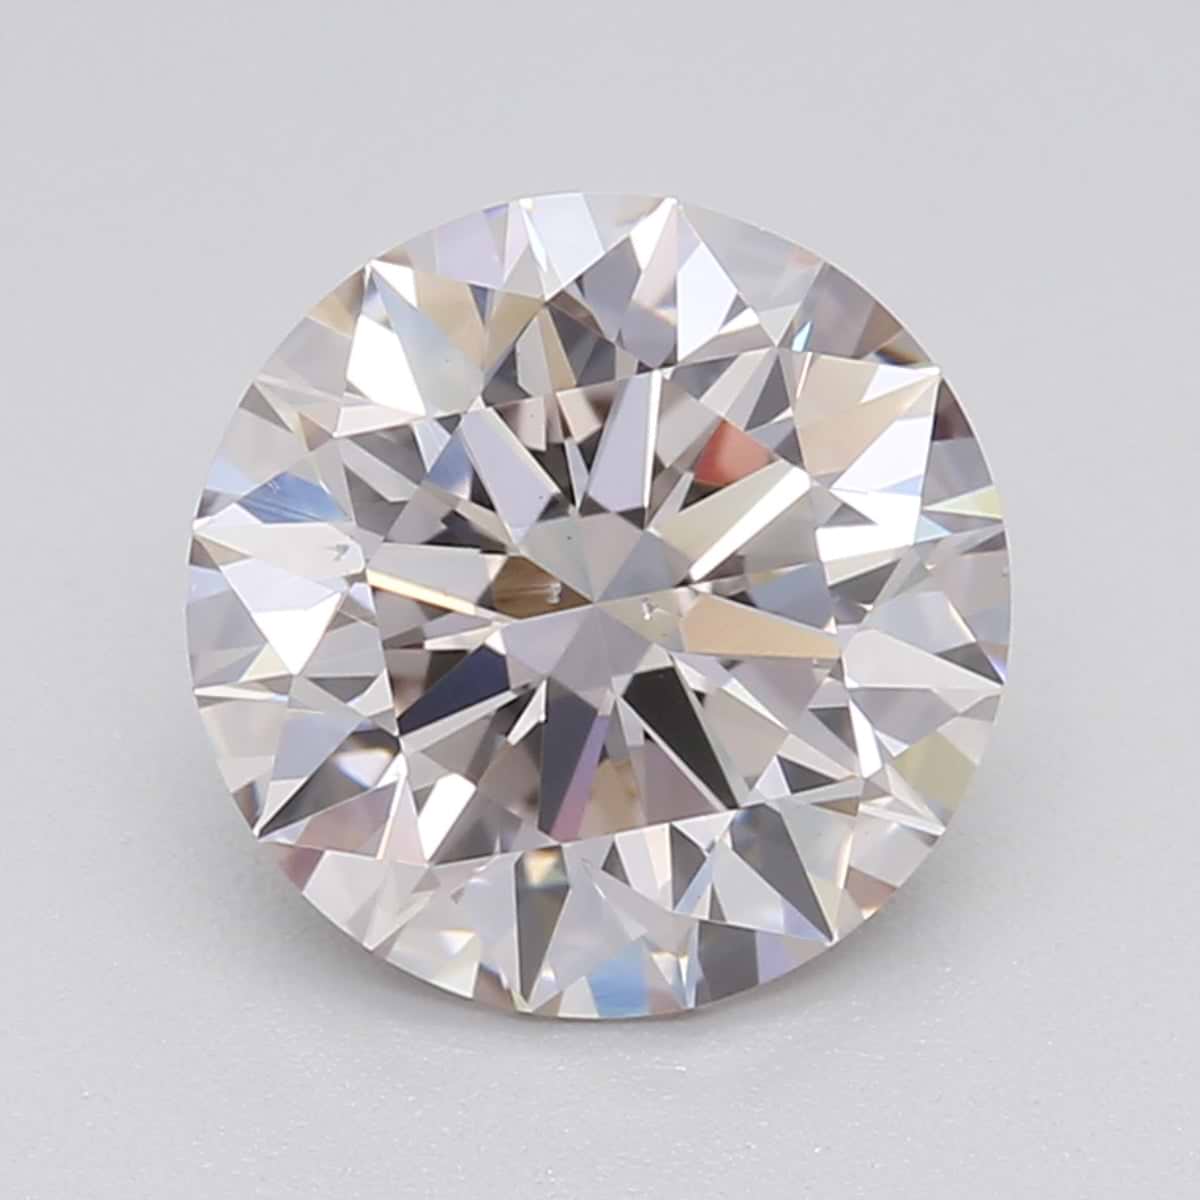 1.42 Carat Round Cut Lab Created Diamond